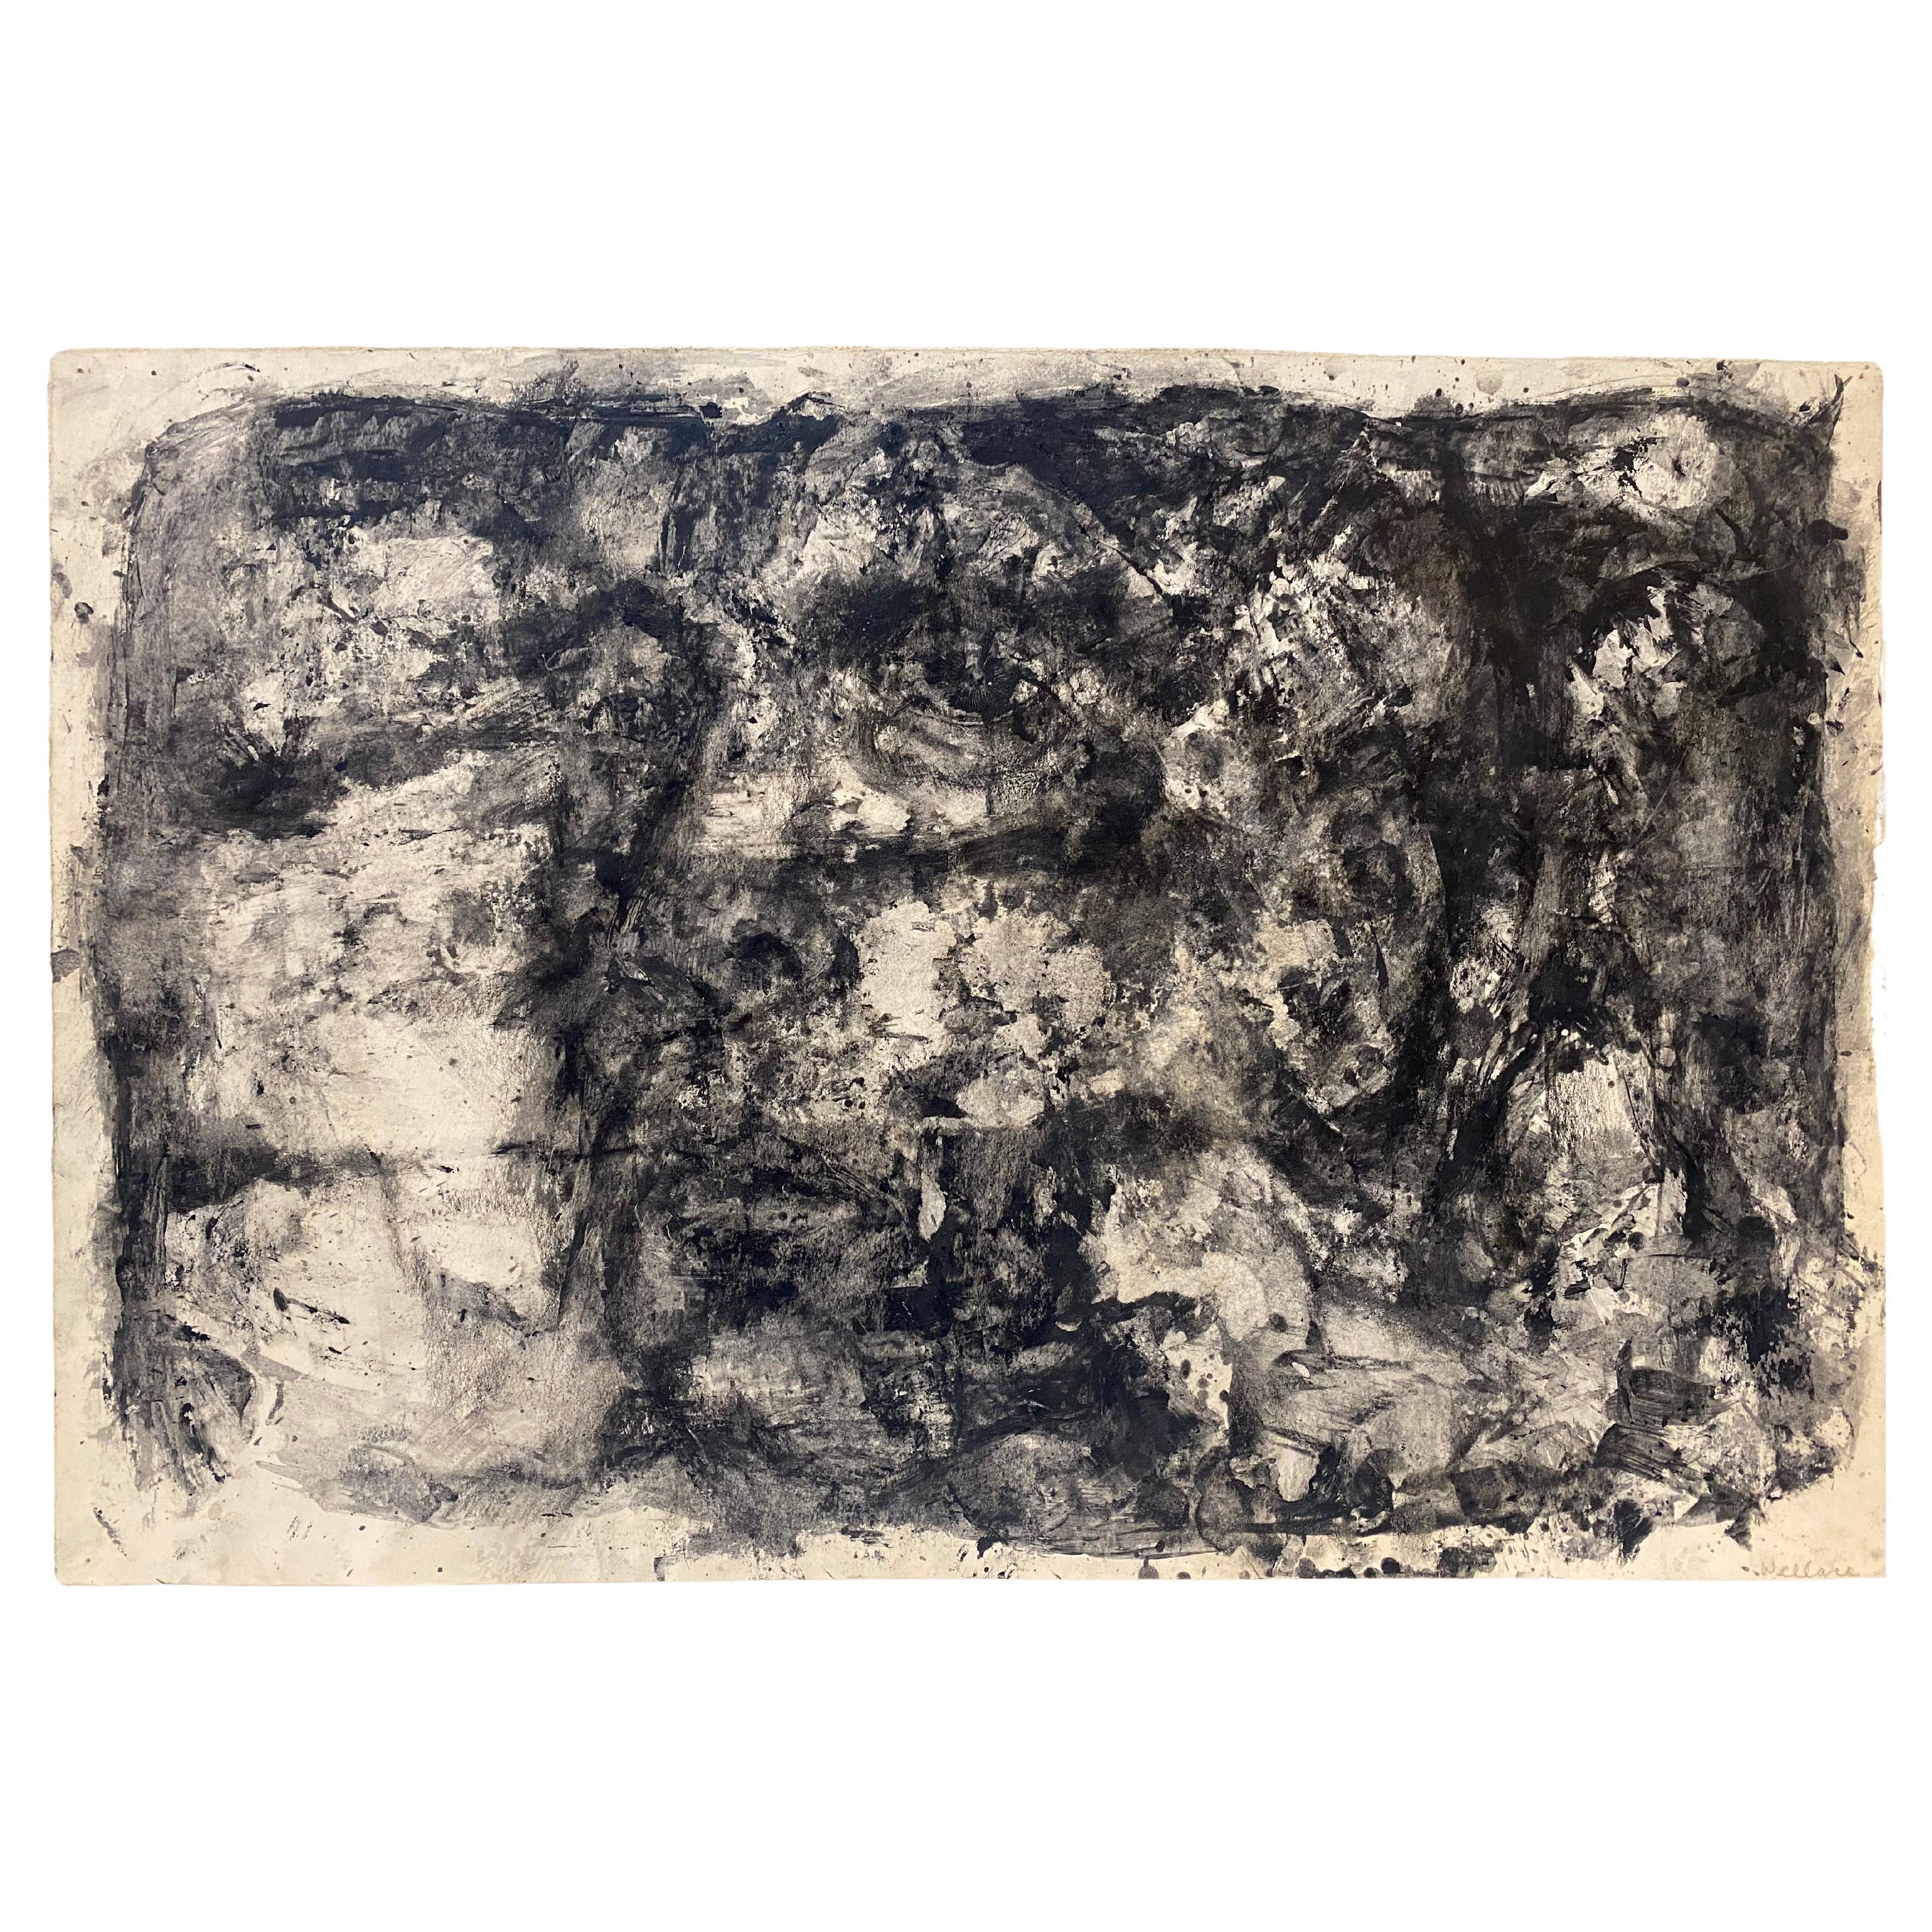 Peinture expressionniste abstraite noire et blanche de Leonard Buzz Wallace